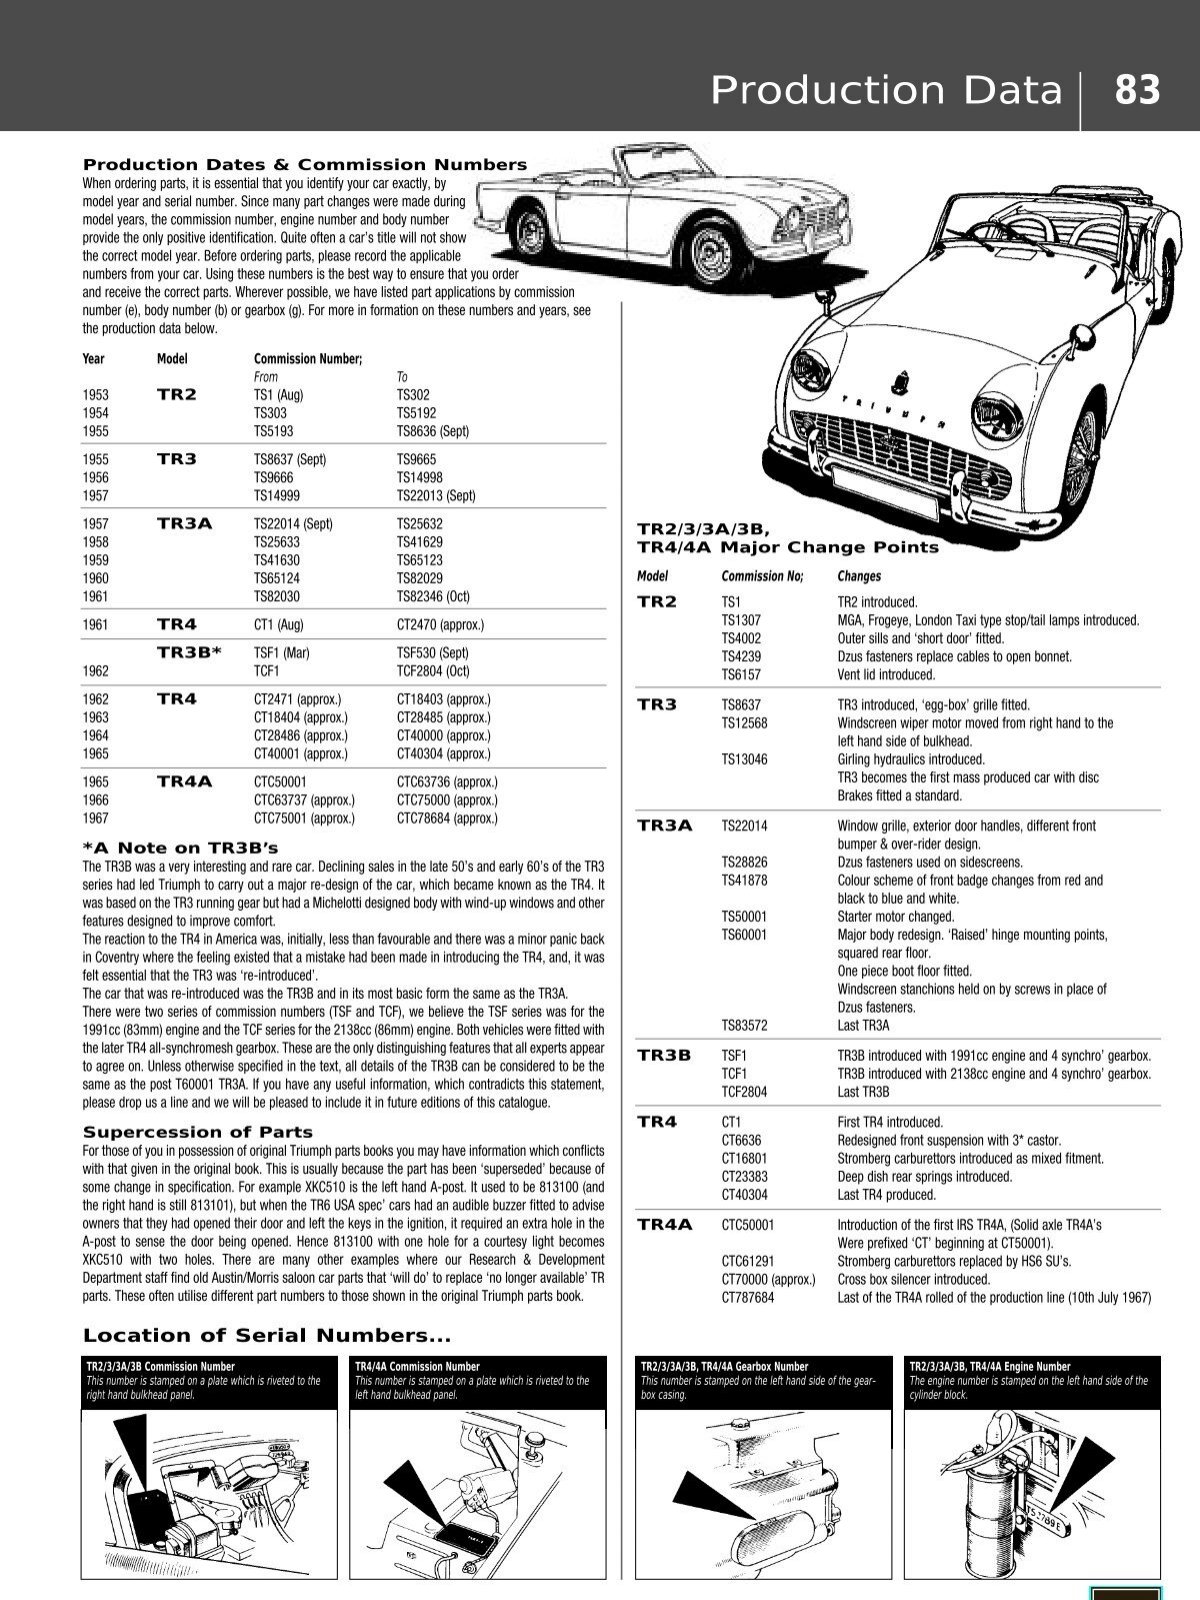 Production Data 83 - Nostalgic British Cars